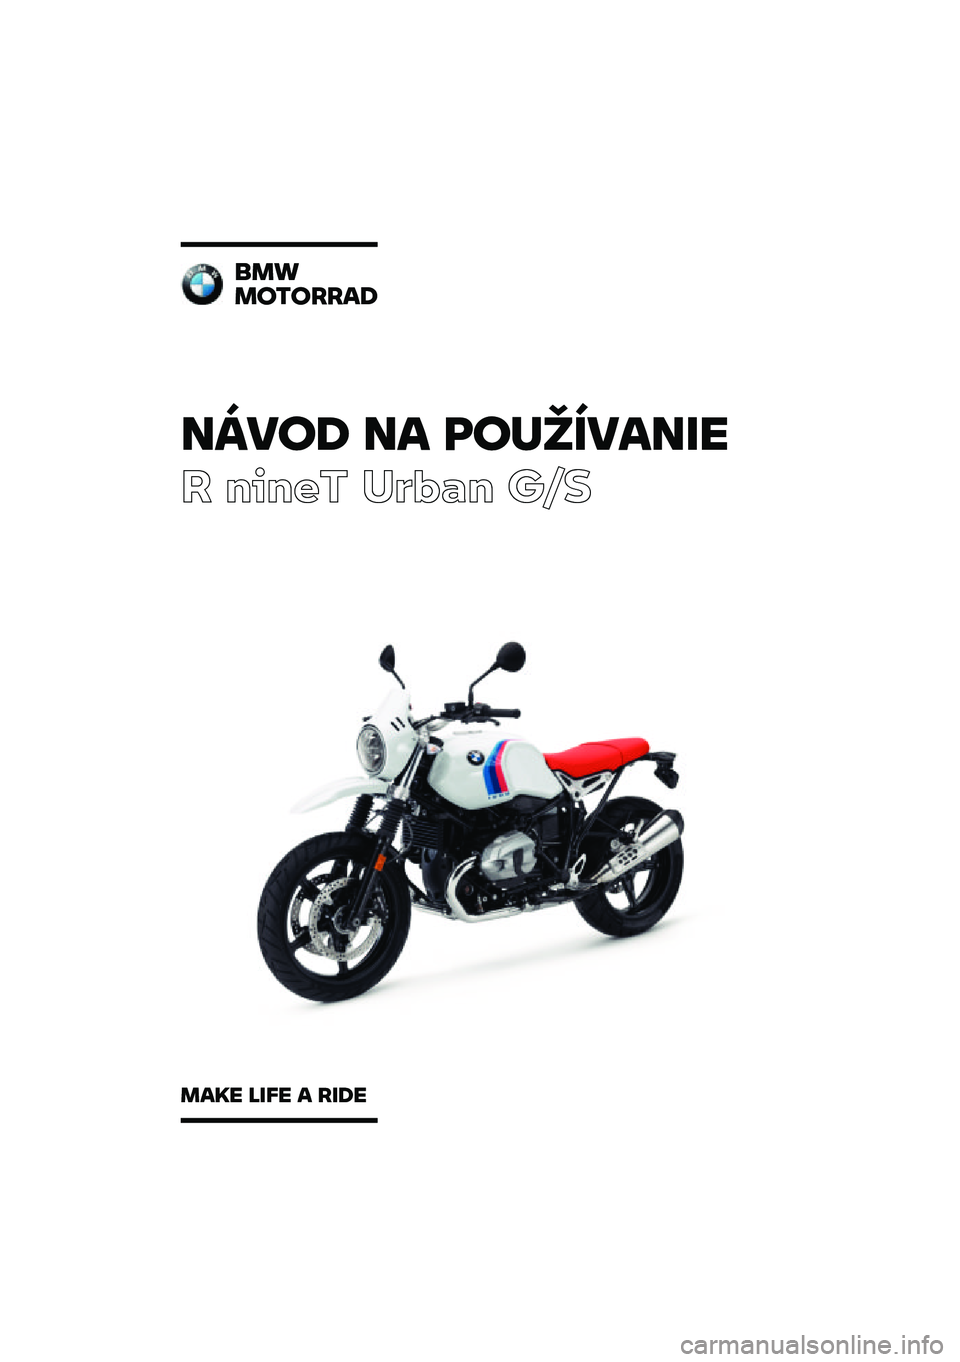 BMW MOTORRAD R NINE T URVAN G/S 2020  Návod na používanie (in Slovak) �����\b �� �	��
�������
� ����� ��\b�	�
� ��\f�
���
��������\b
���� ���� � ���\b� 